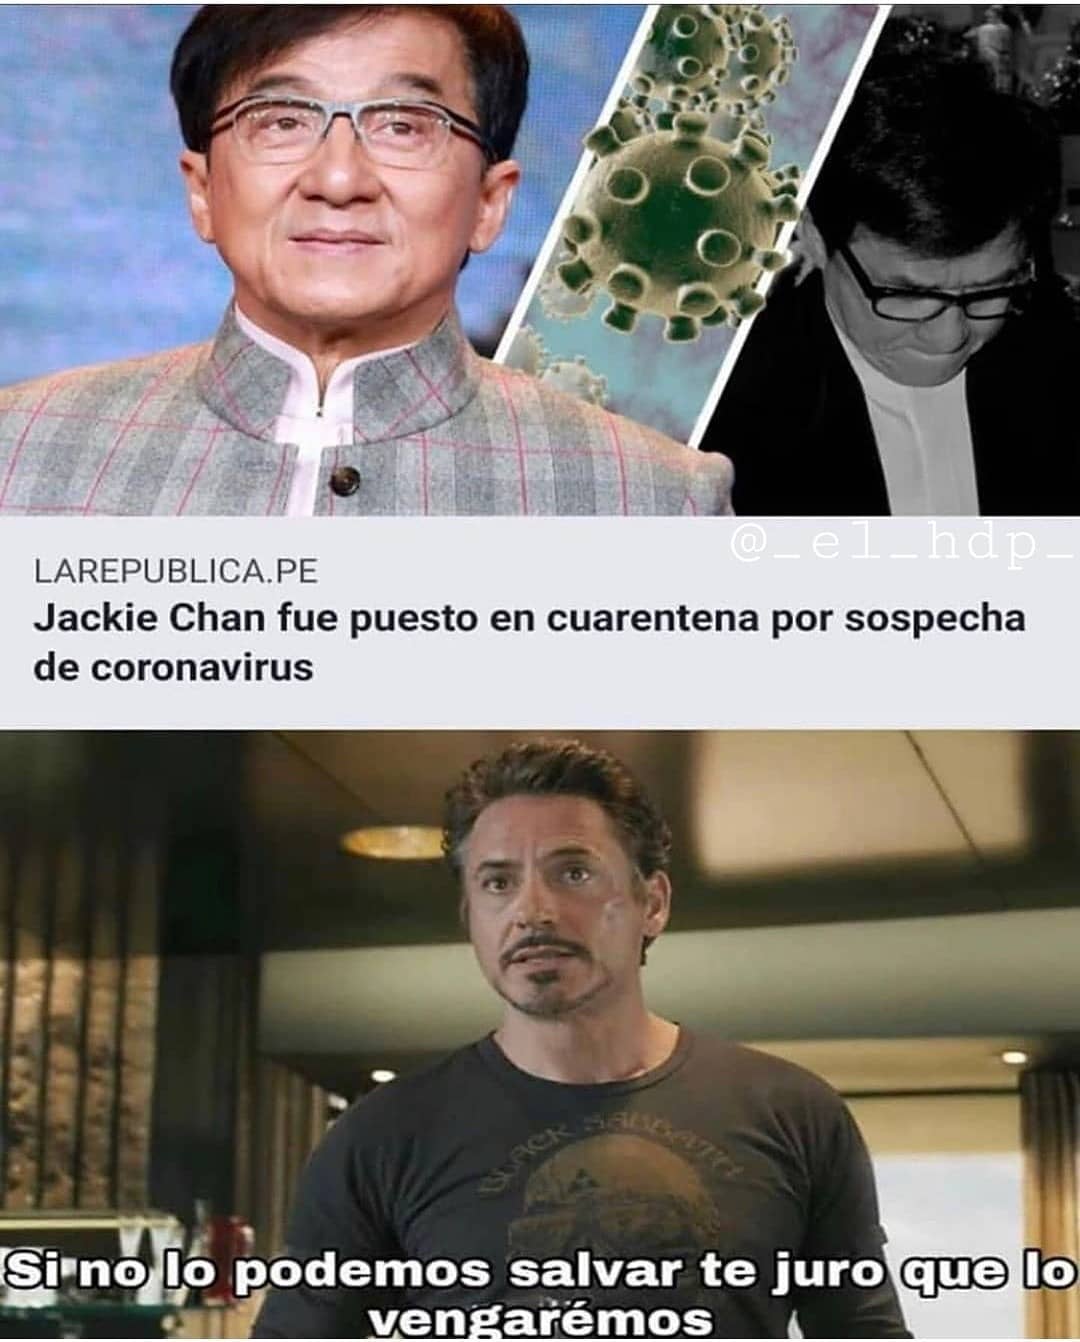 Jackie Chan fue puesto en cuarentena por sospecha de coronavirus. Si no lo podemos salvar te juro que lo vengaremos.